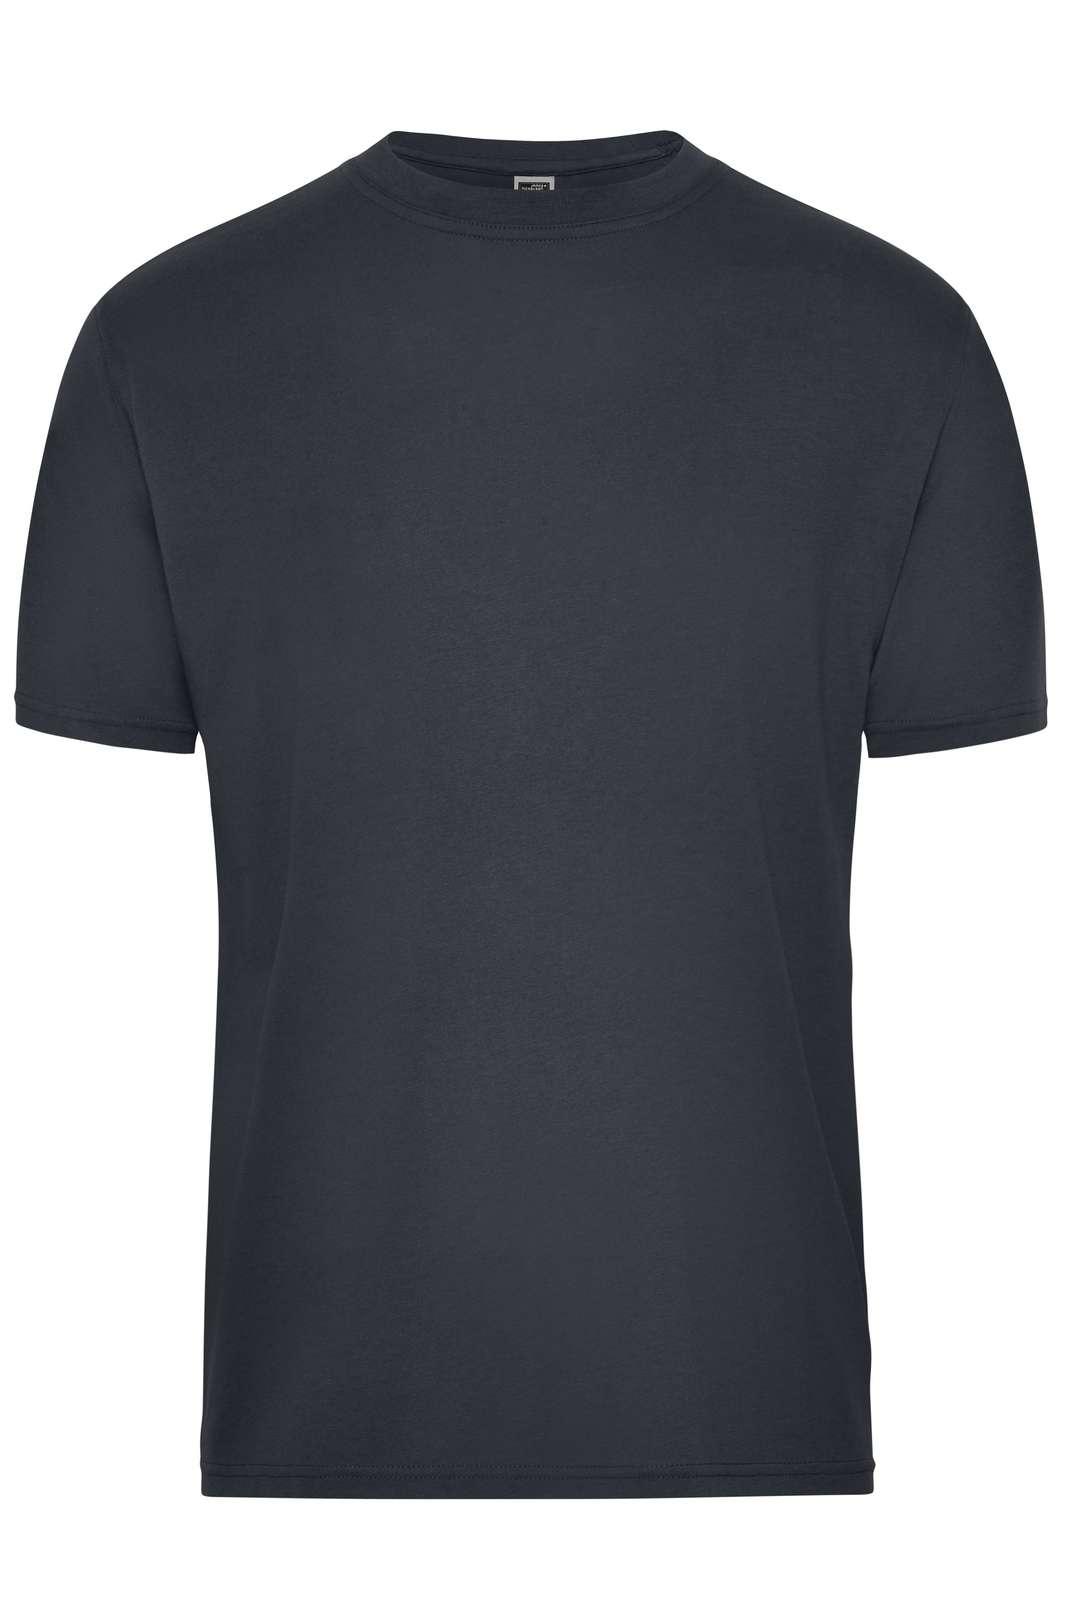 JN BIO T-SHIRT - Arbejds T-shirt - JA Profil 